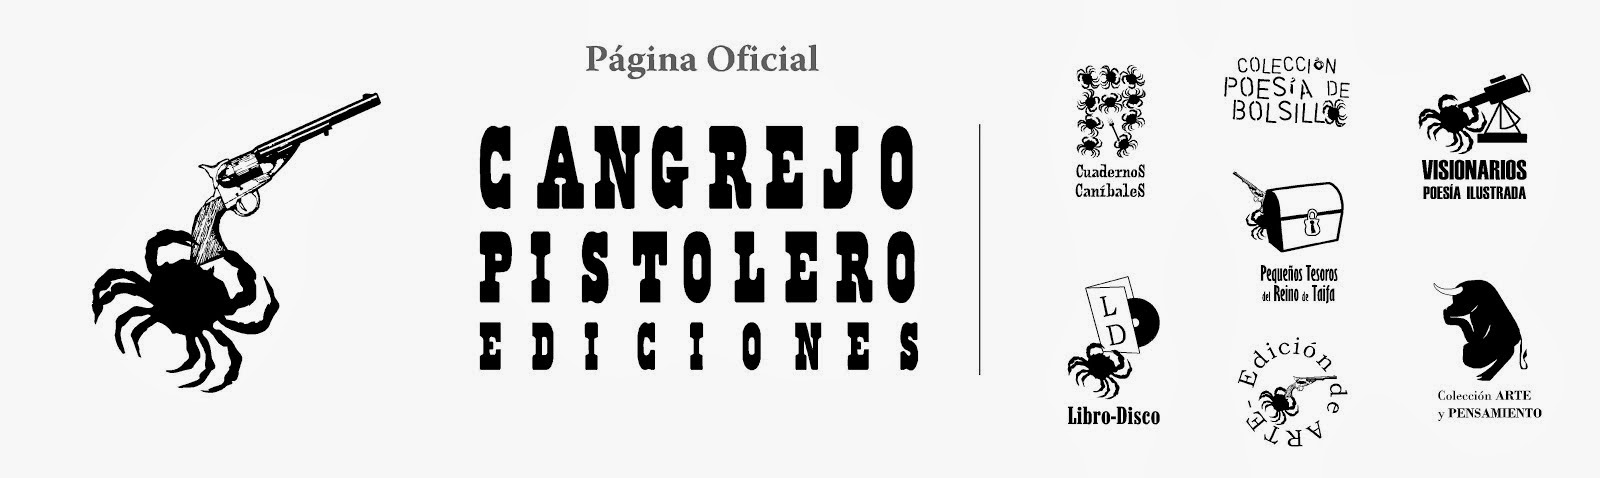 Cangrejo Pistolero Ediciones